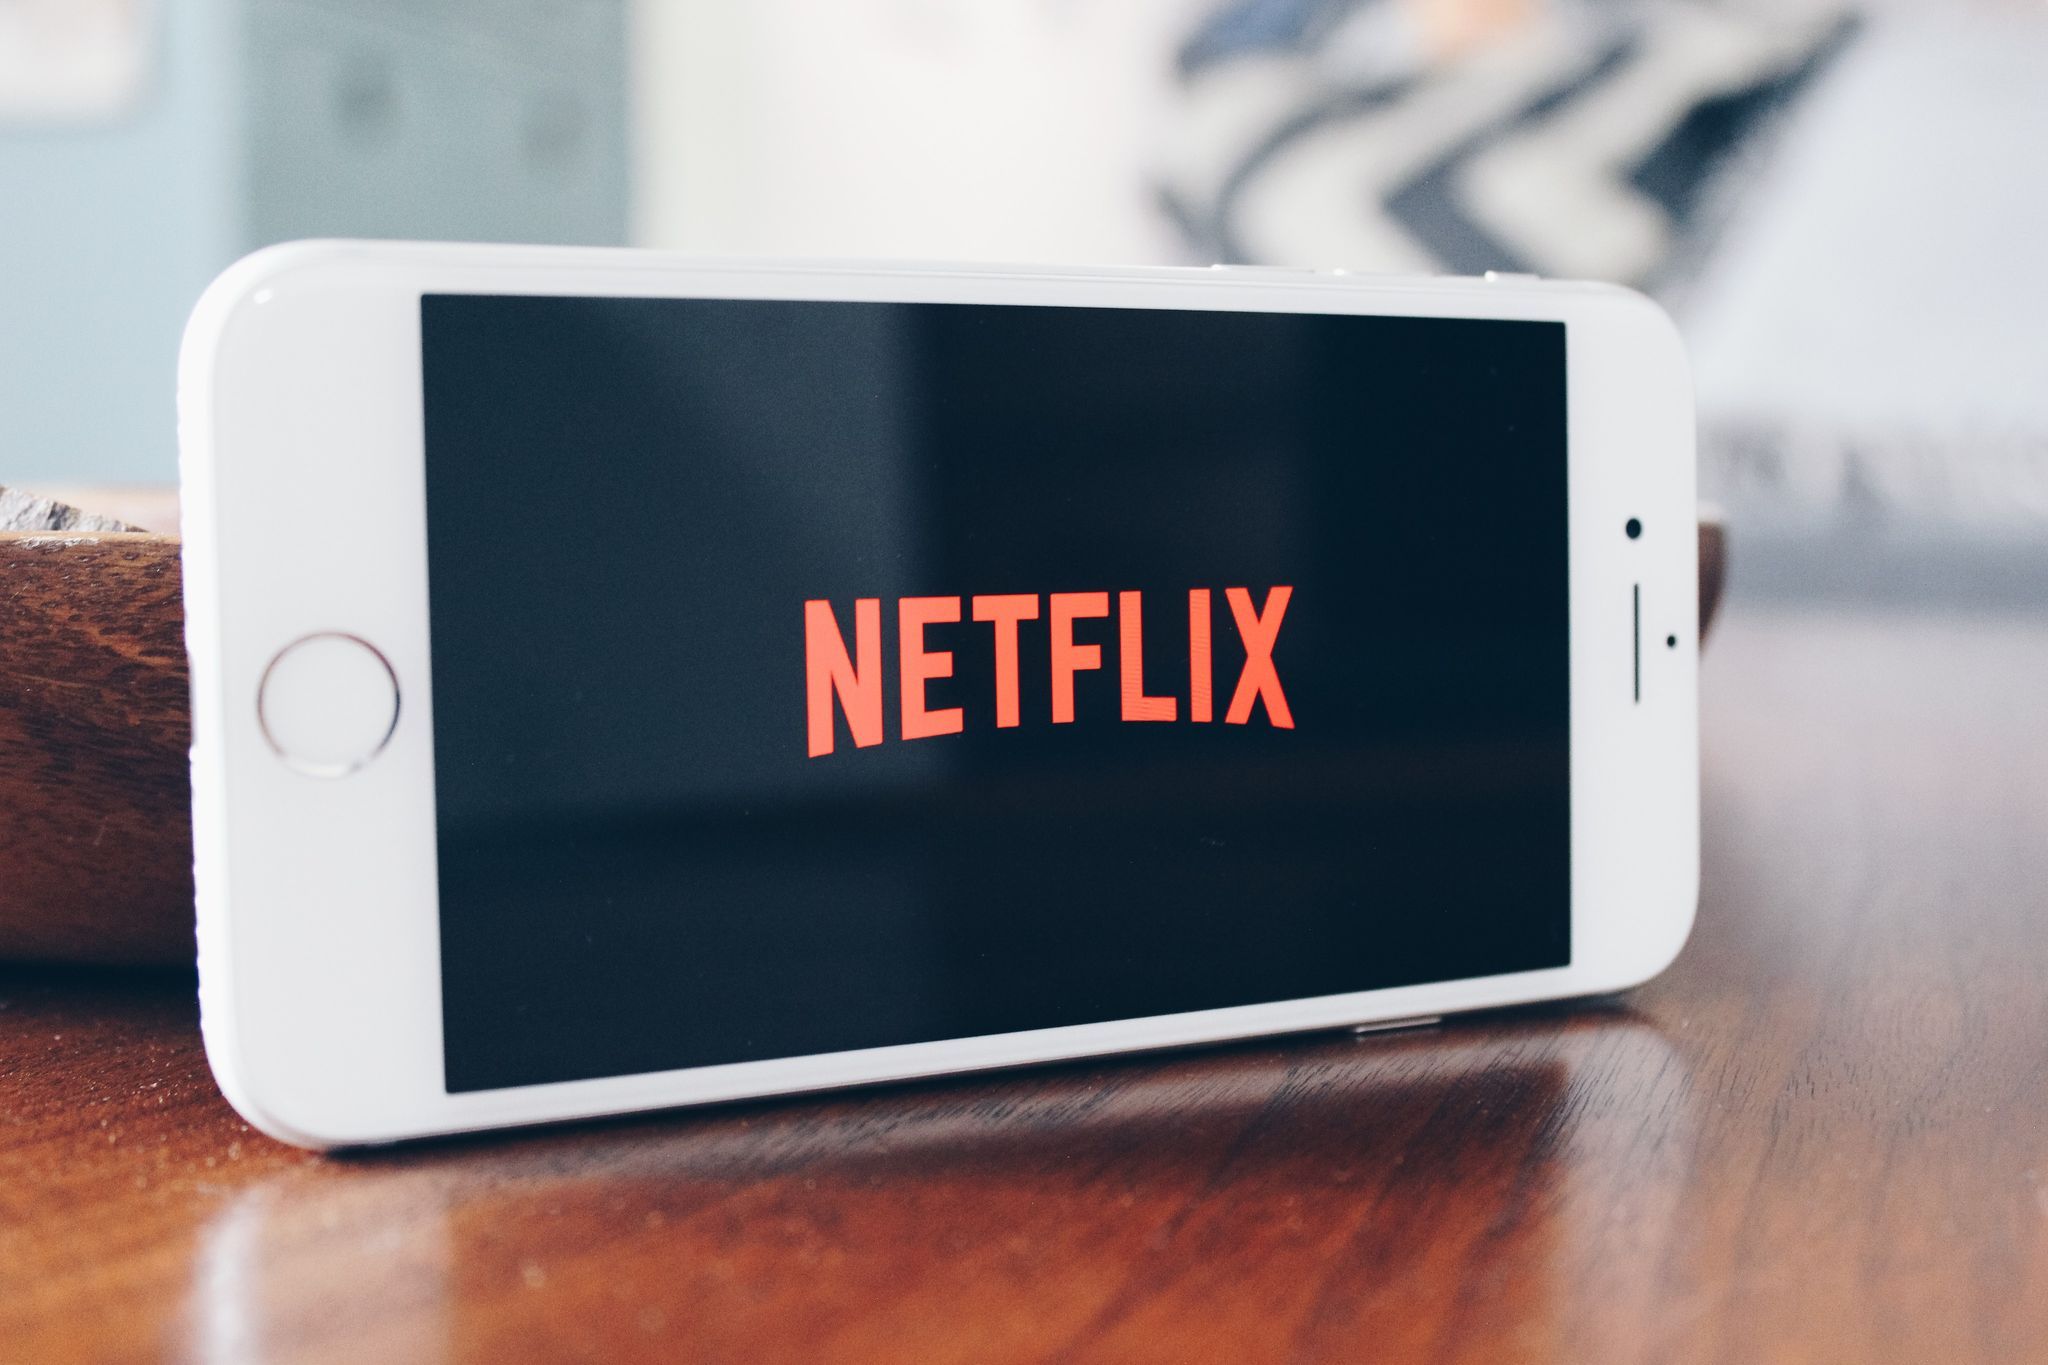 Стрімінговий сервіс Netflix запустив власний аналог мережі TikTok